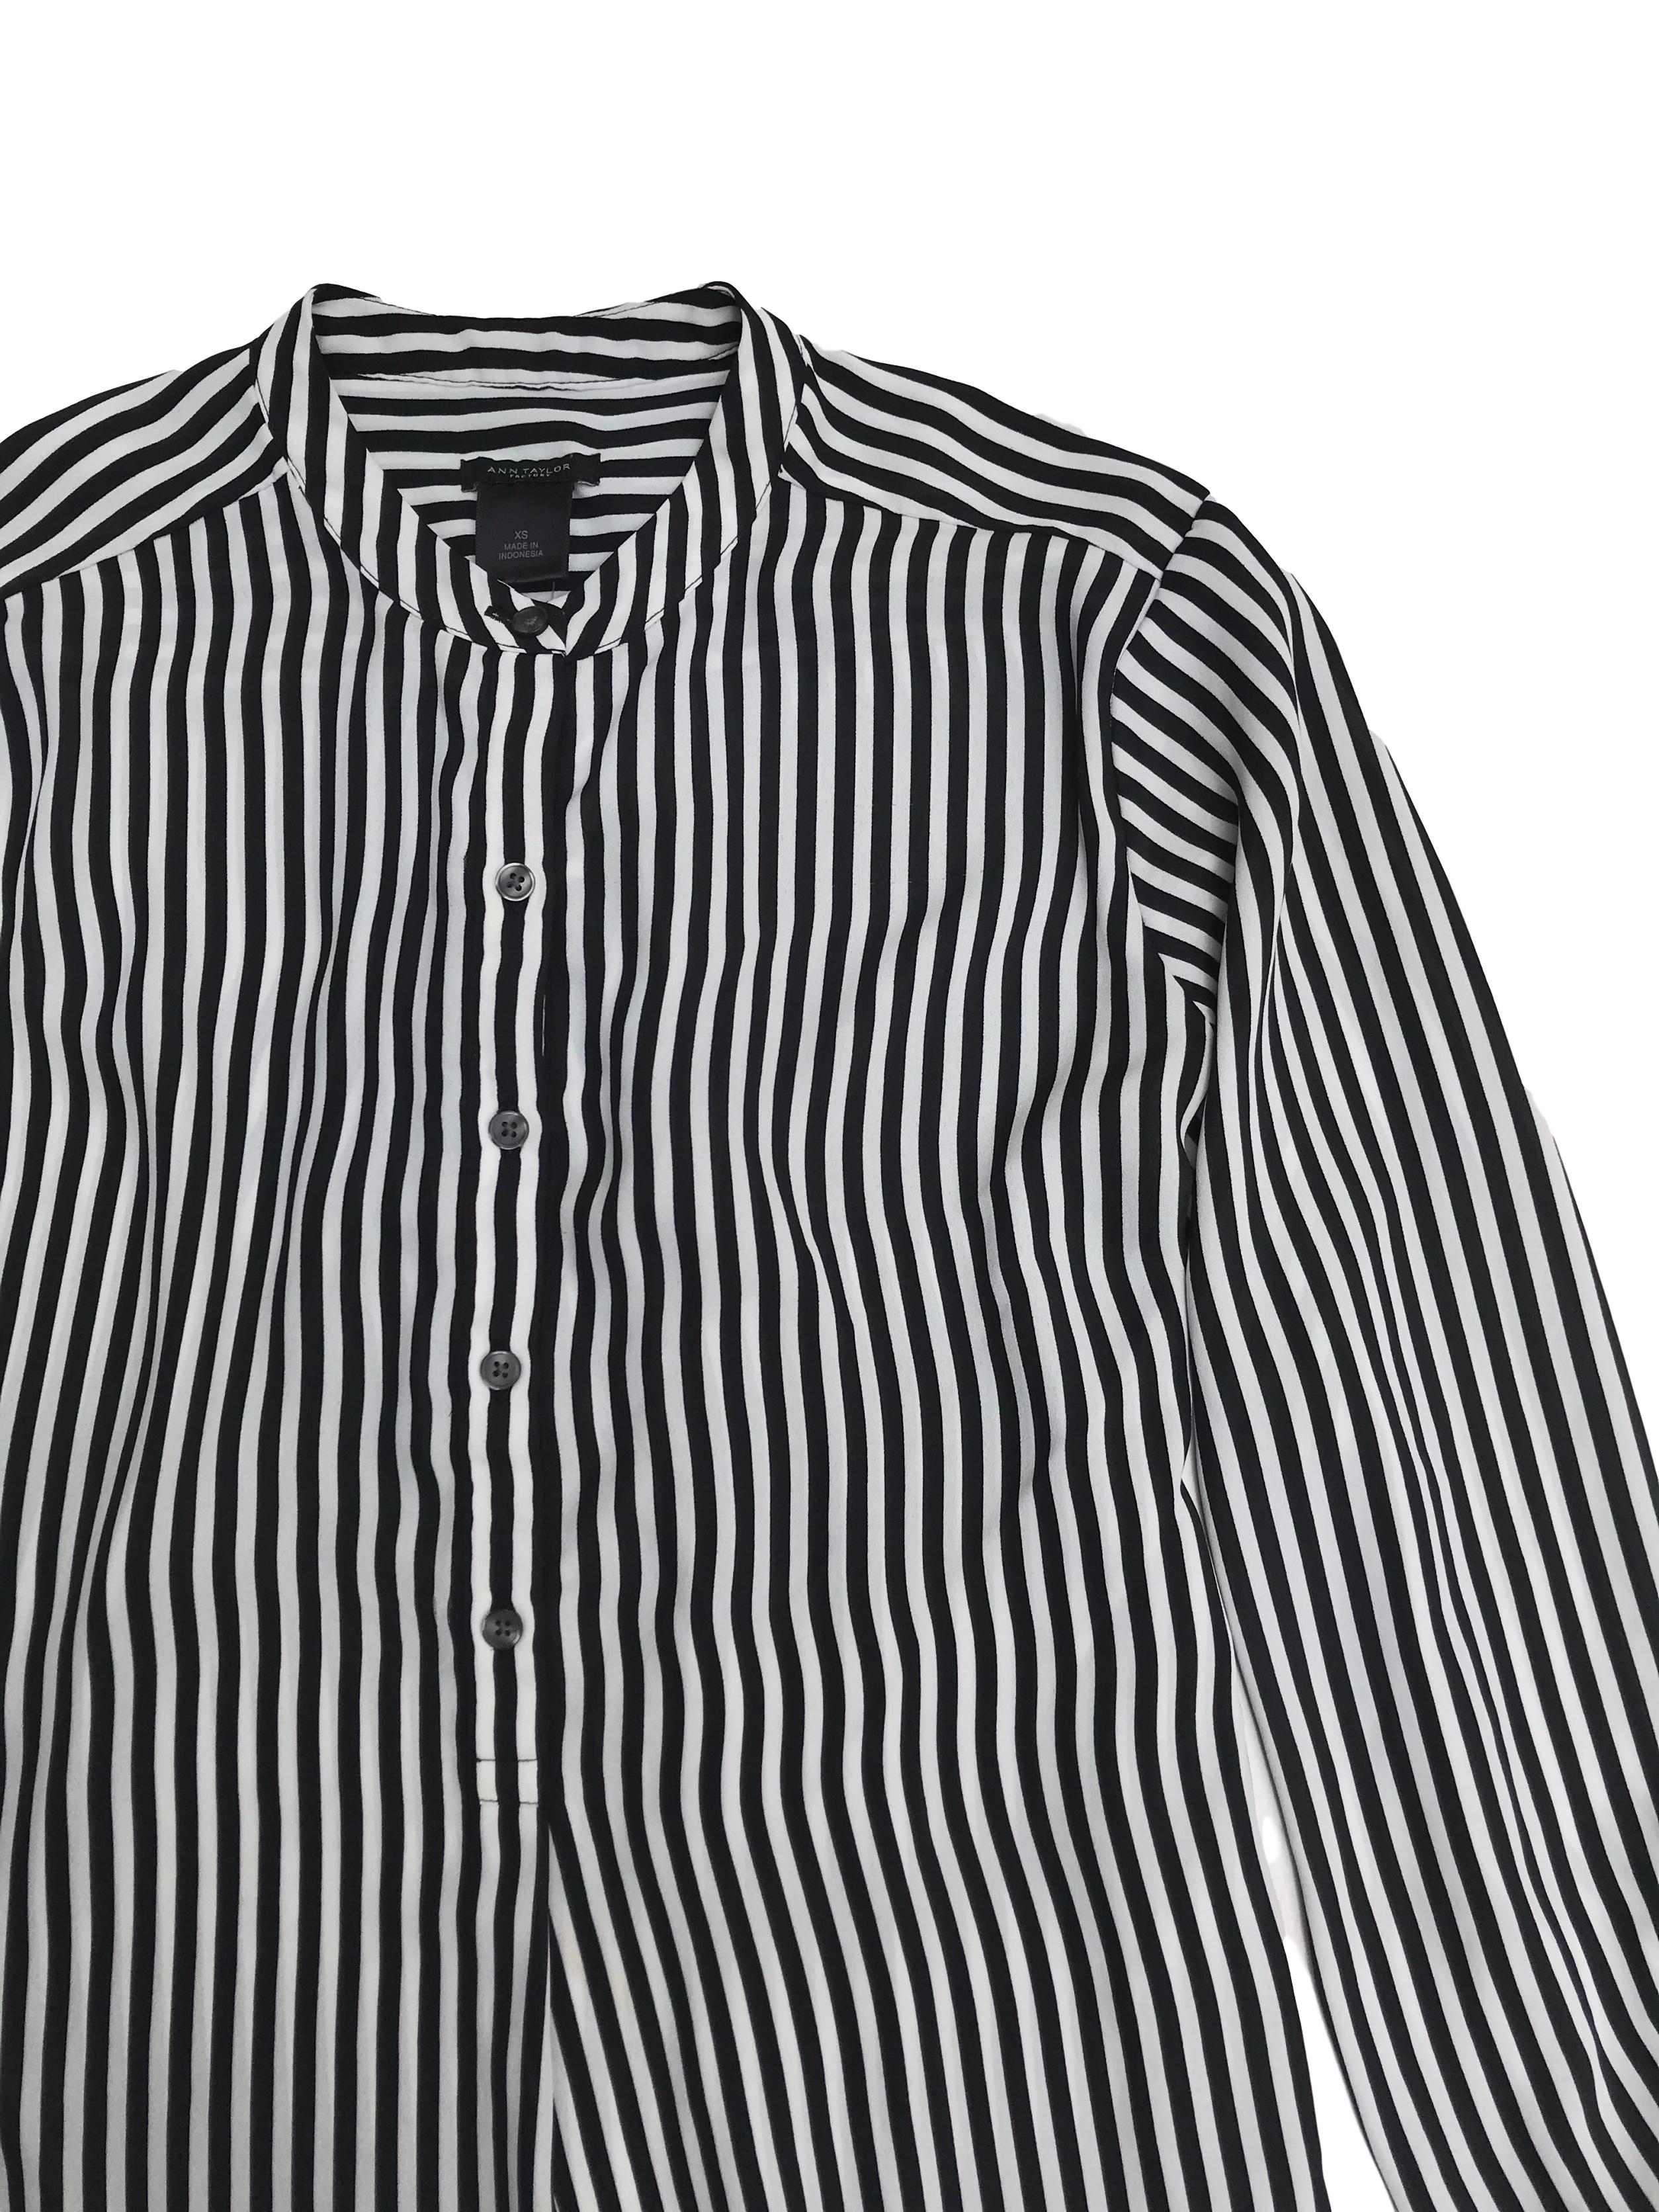 Blusa Ann Taylor de tela plana fluida a rayas blancas y negras, cuello nerú, botones en el pecho y puños campana, fit suelto. Busto 100cm Largo 50-60cm